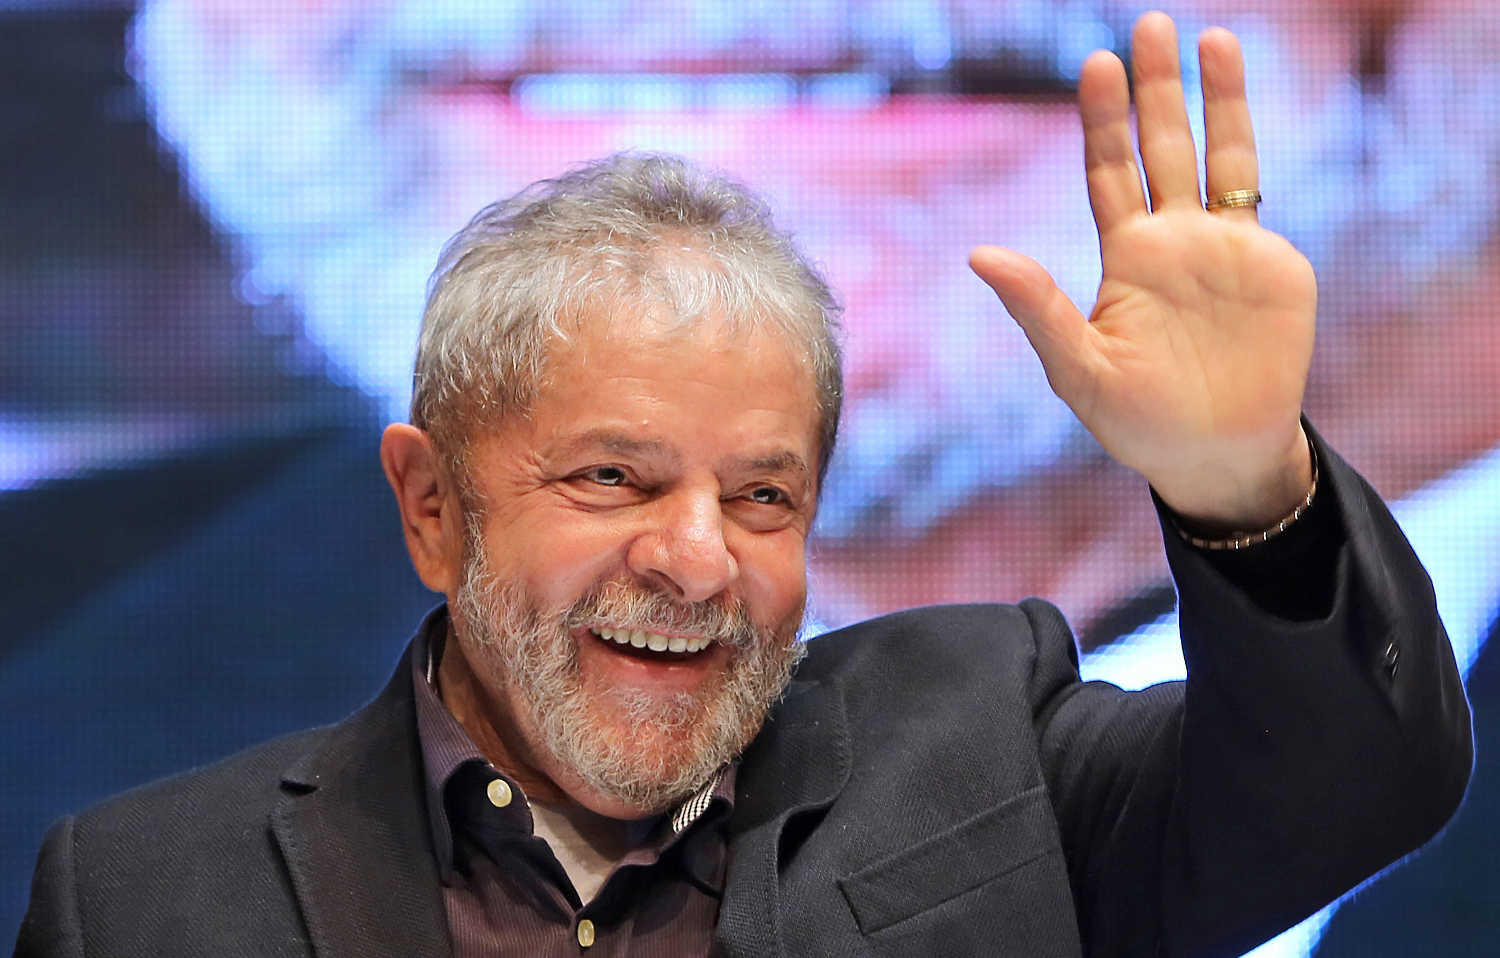 DIPLOMADOS LADRÕES: Lula afirma que até agora os que roubaram têm diploma